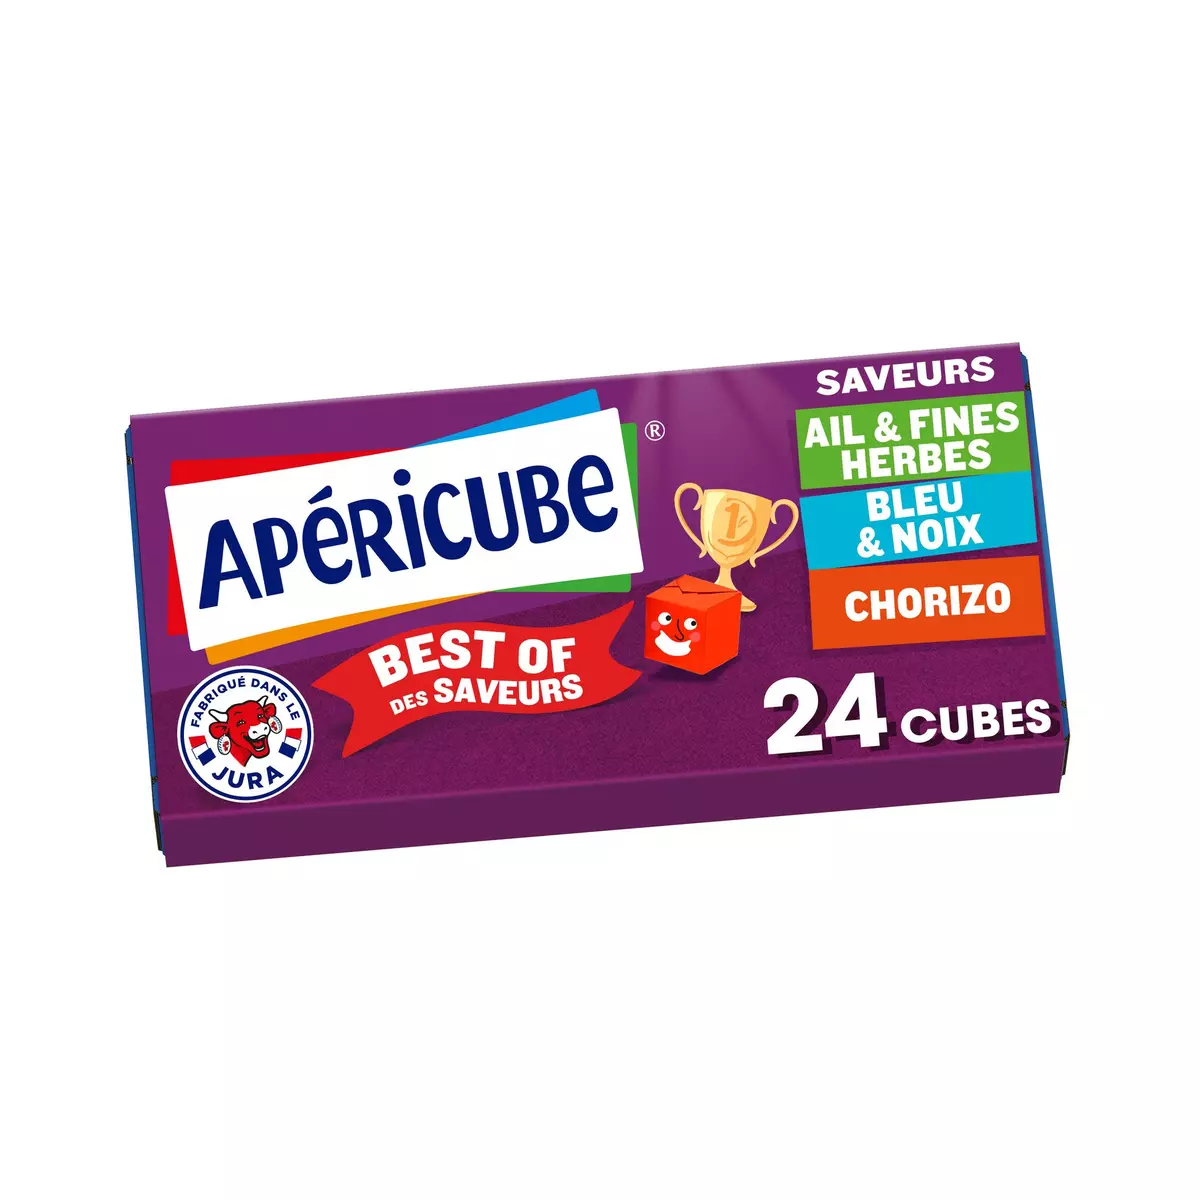 APERICUBE Cubes de fromage apéritif best of des saveurs 24 cubes 125g